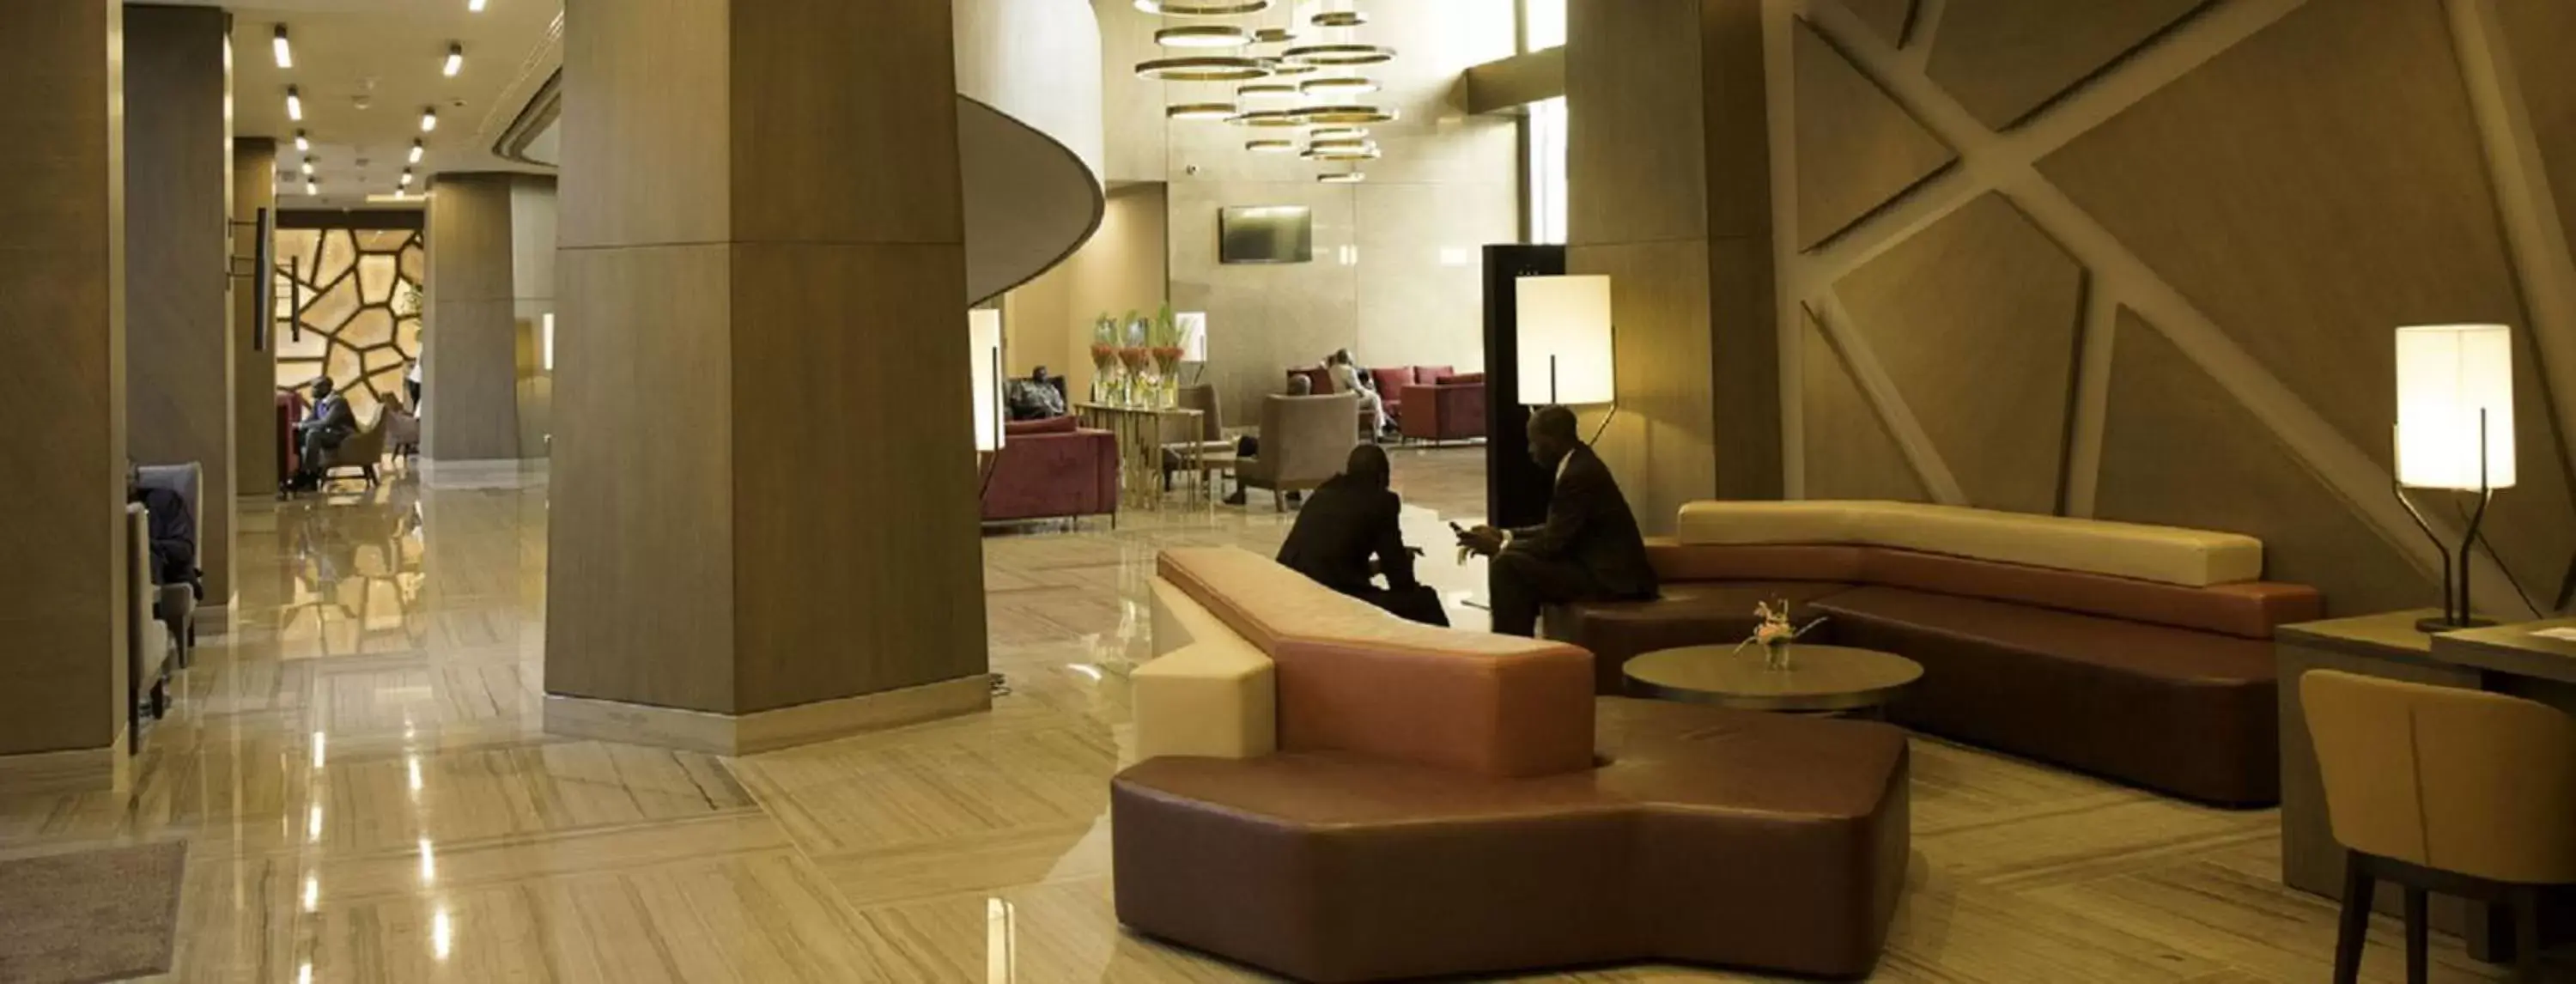 Lobby or reception, Lobby/Reception in Radisson Blu Hotel, Abidjan Airport